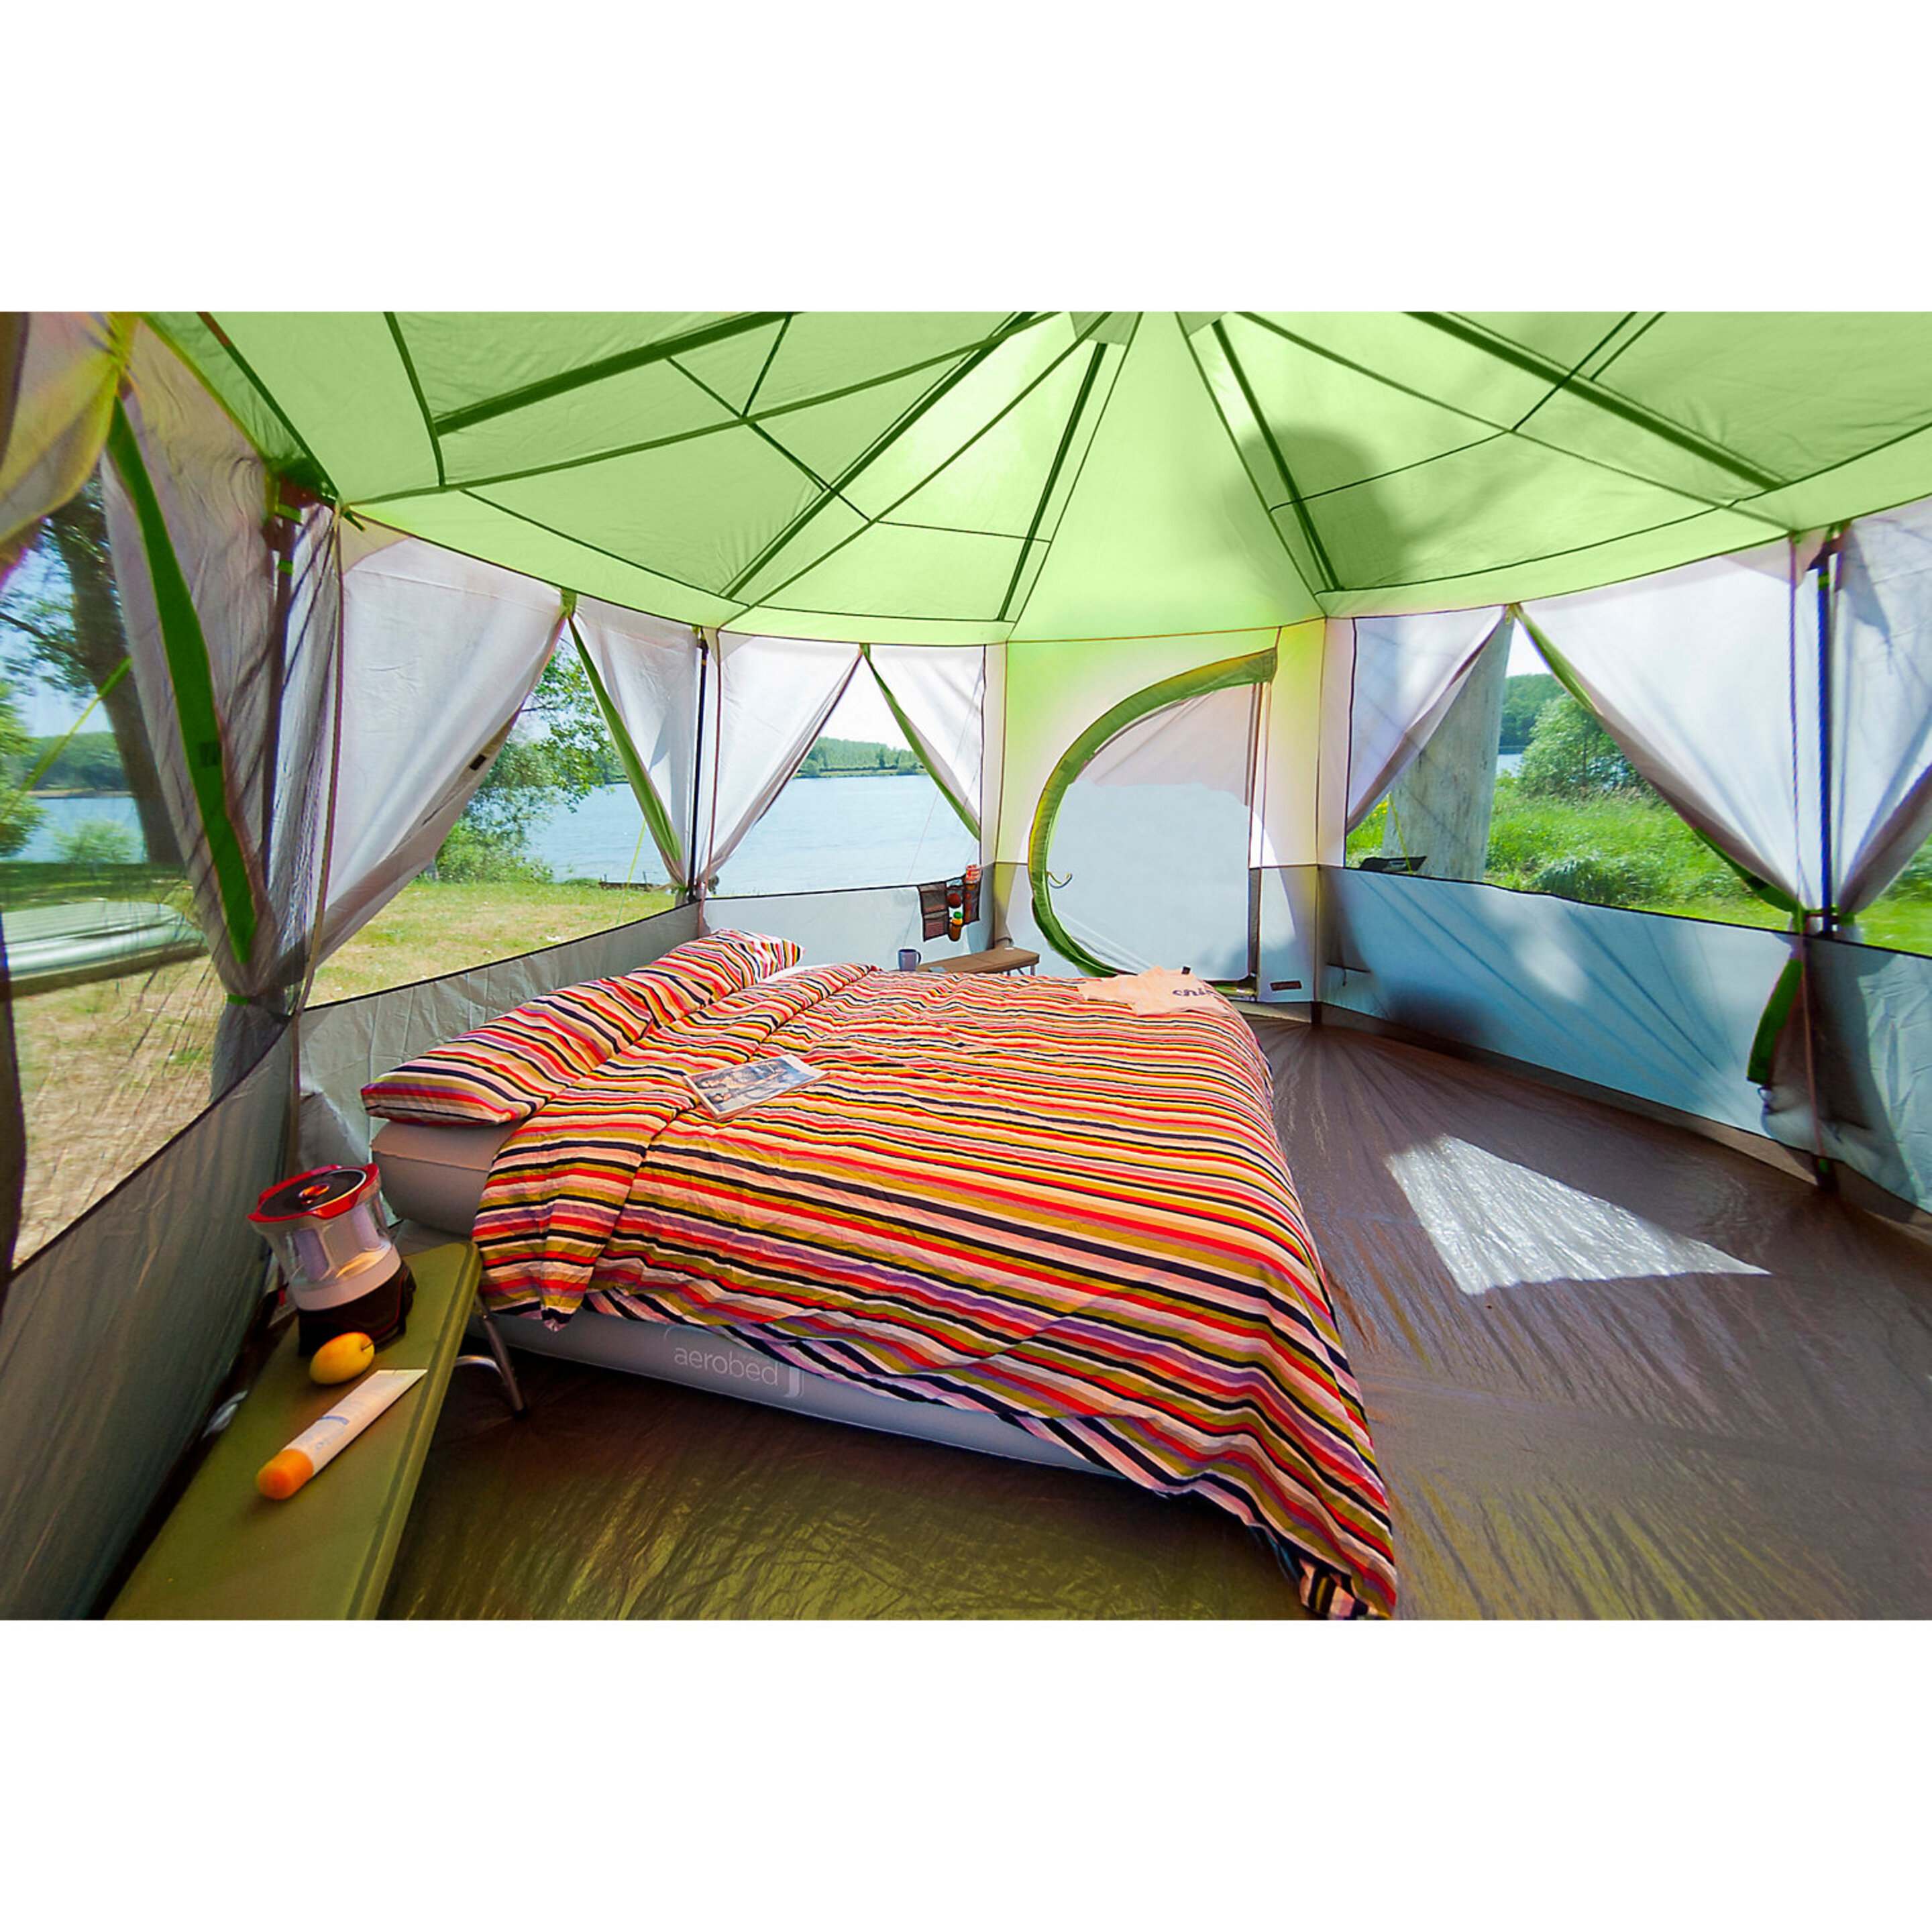 Carpa Tienda Coleman Octagon 8 - sin color - Camping  MKP